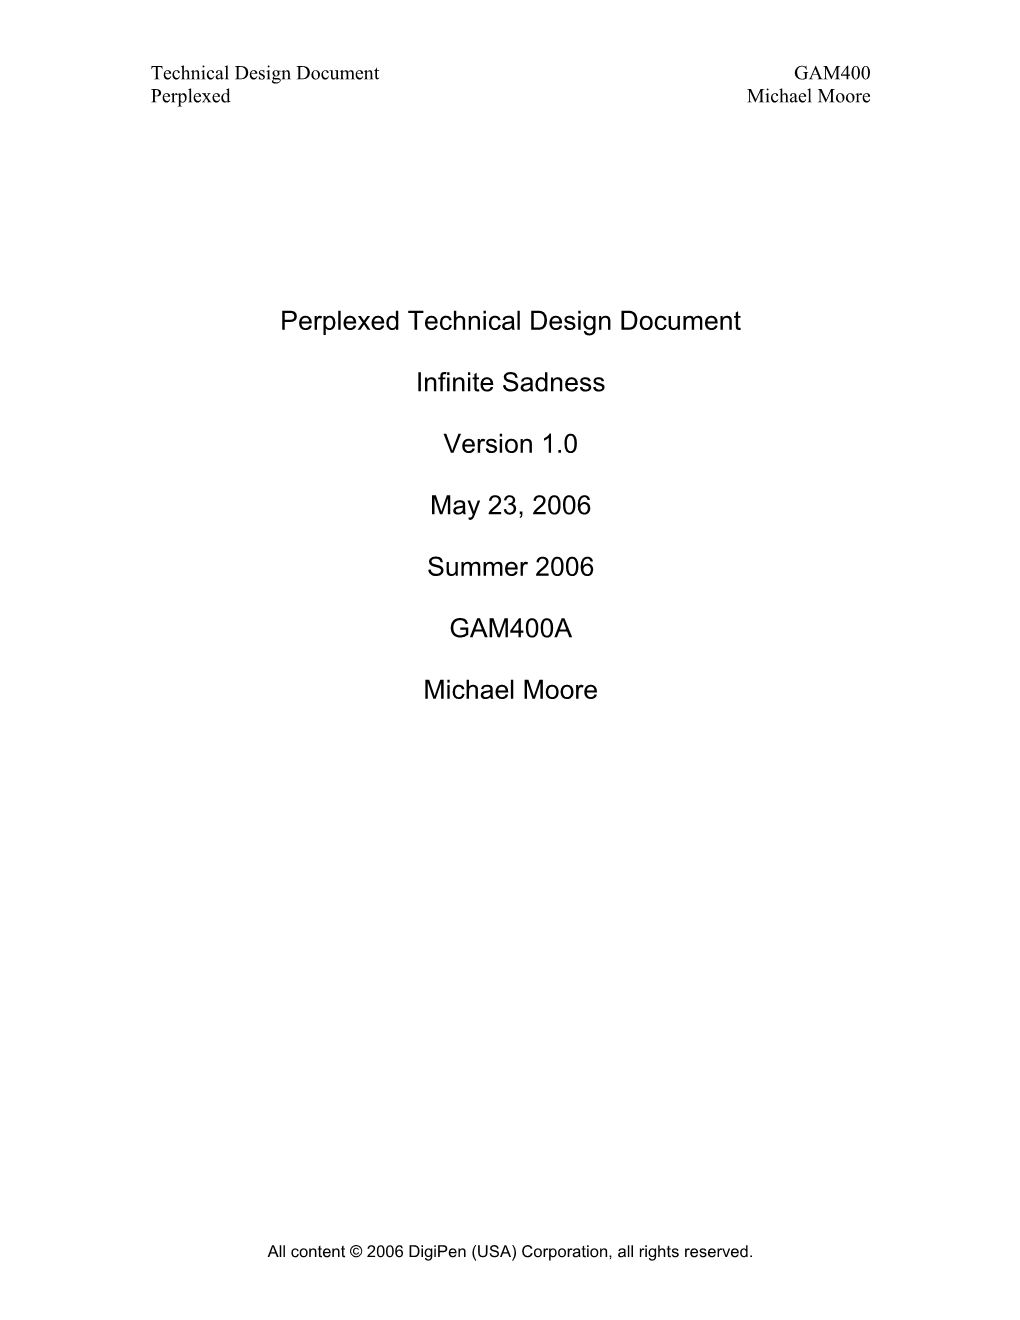 Perplexed Technical Design Document